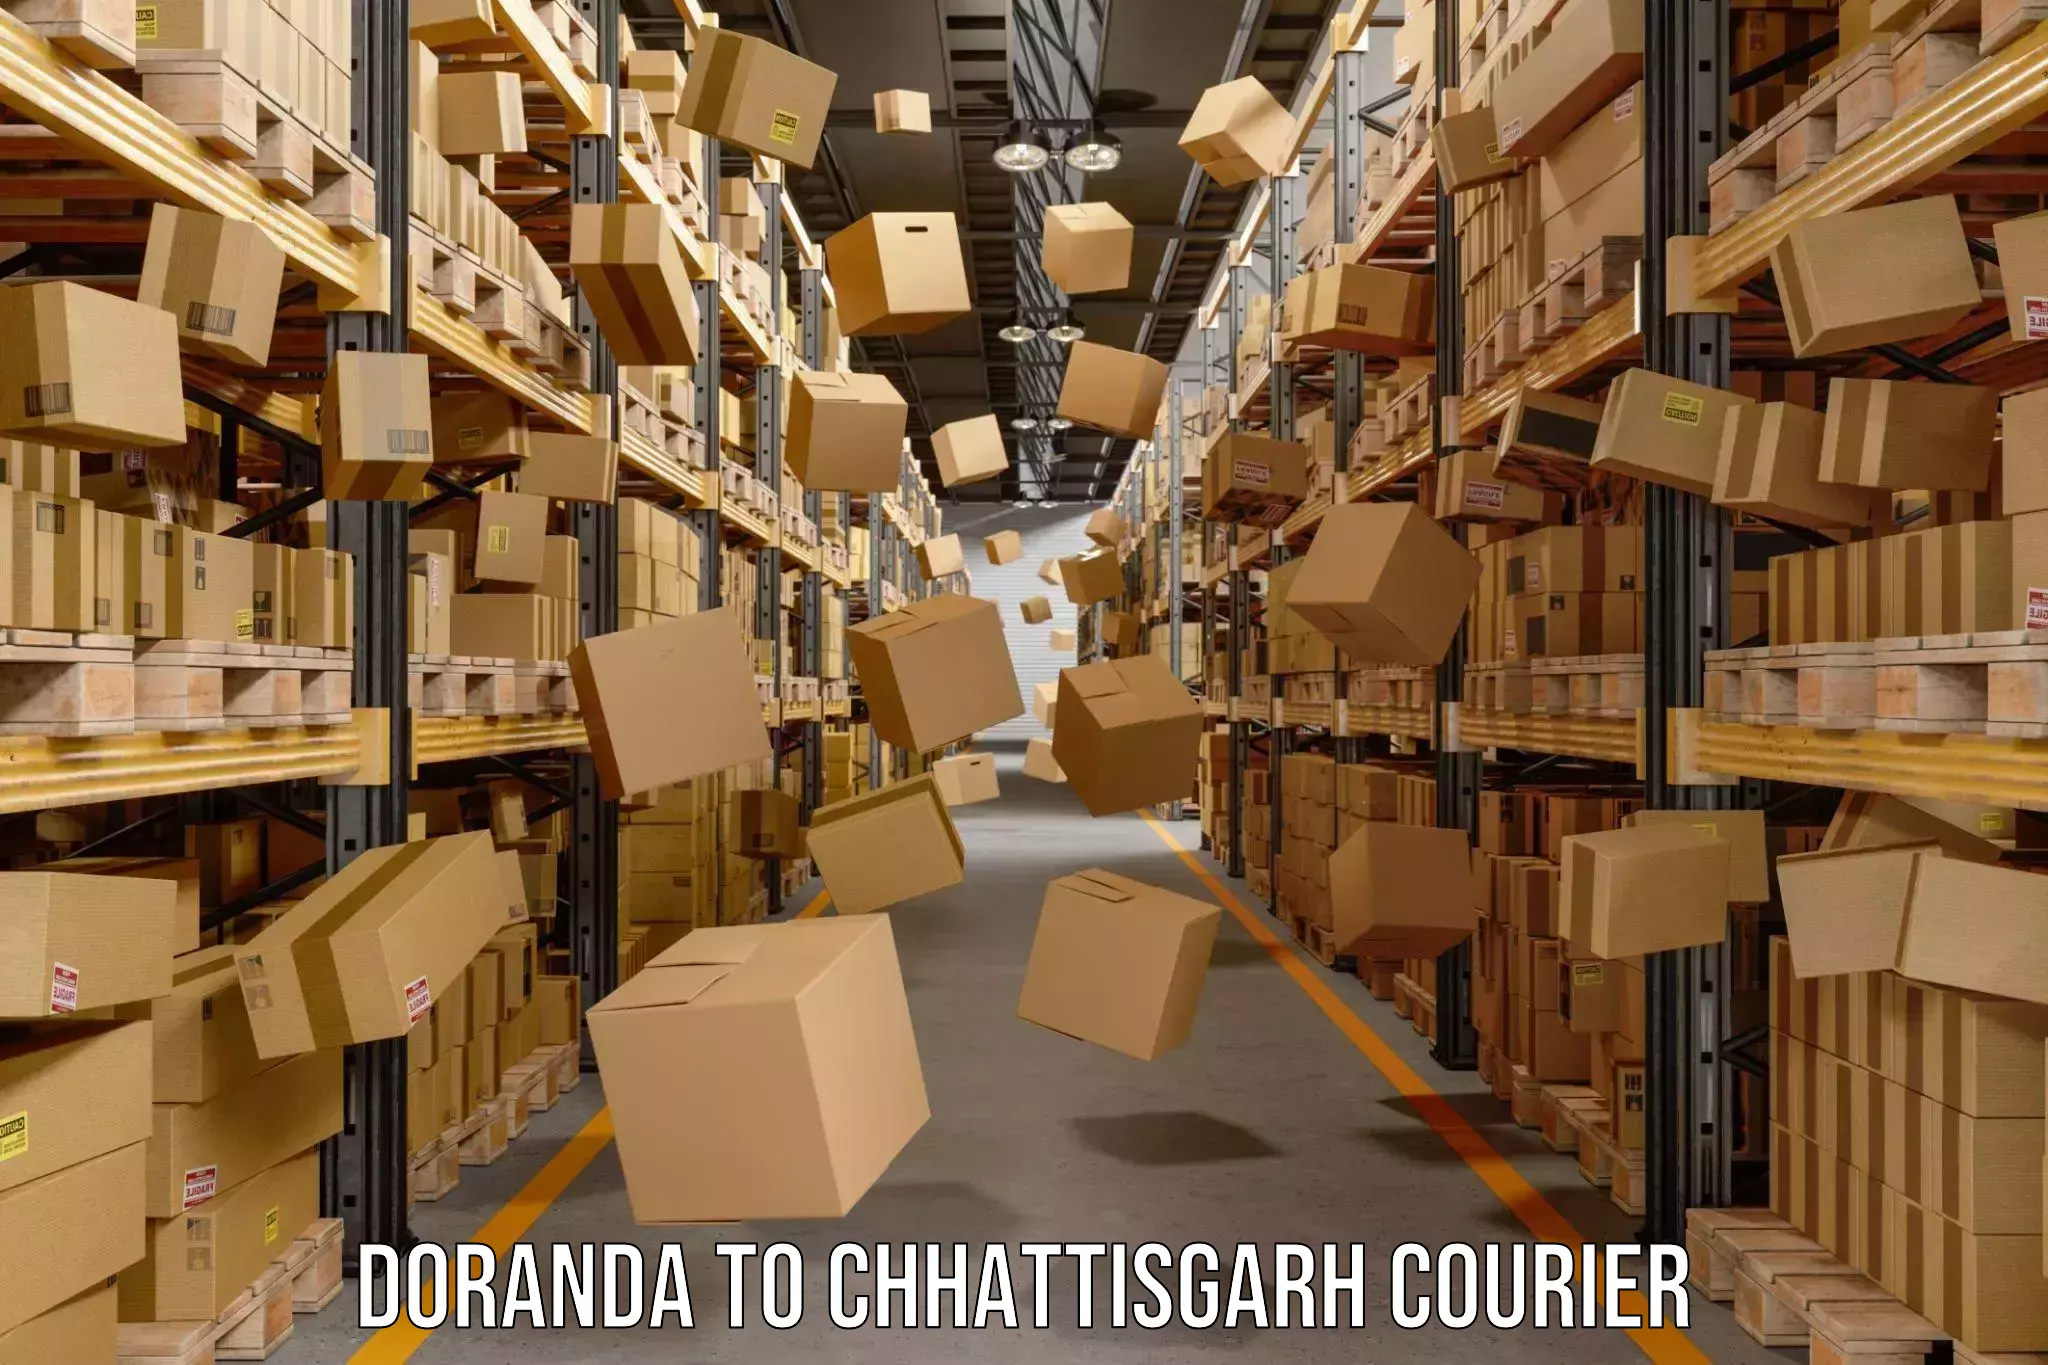 Specialized courier services Doranda to Chhattisgarh